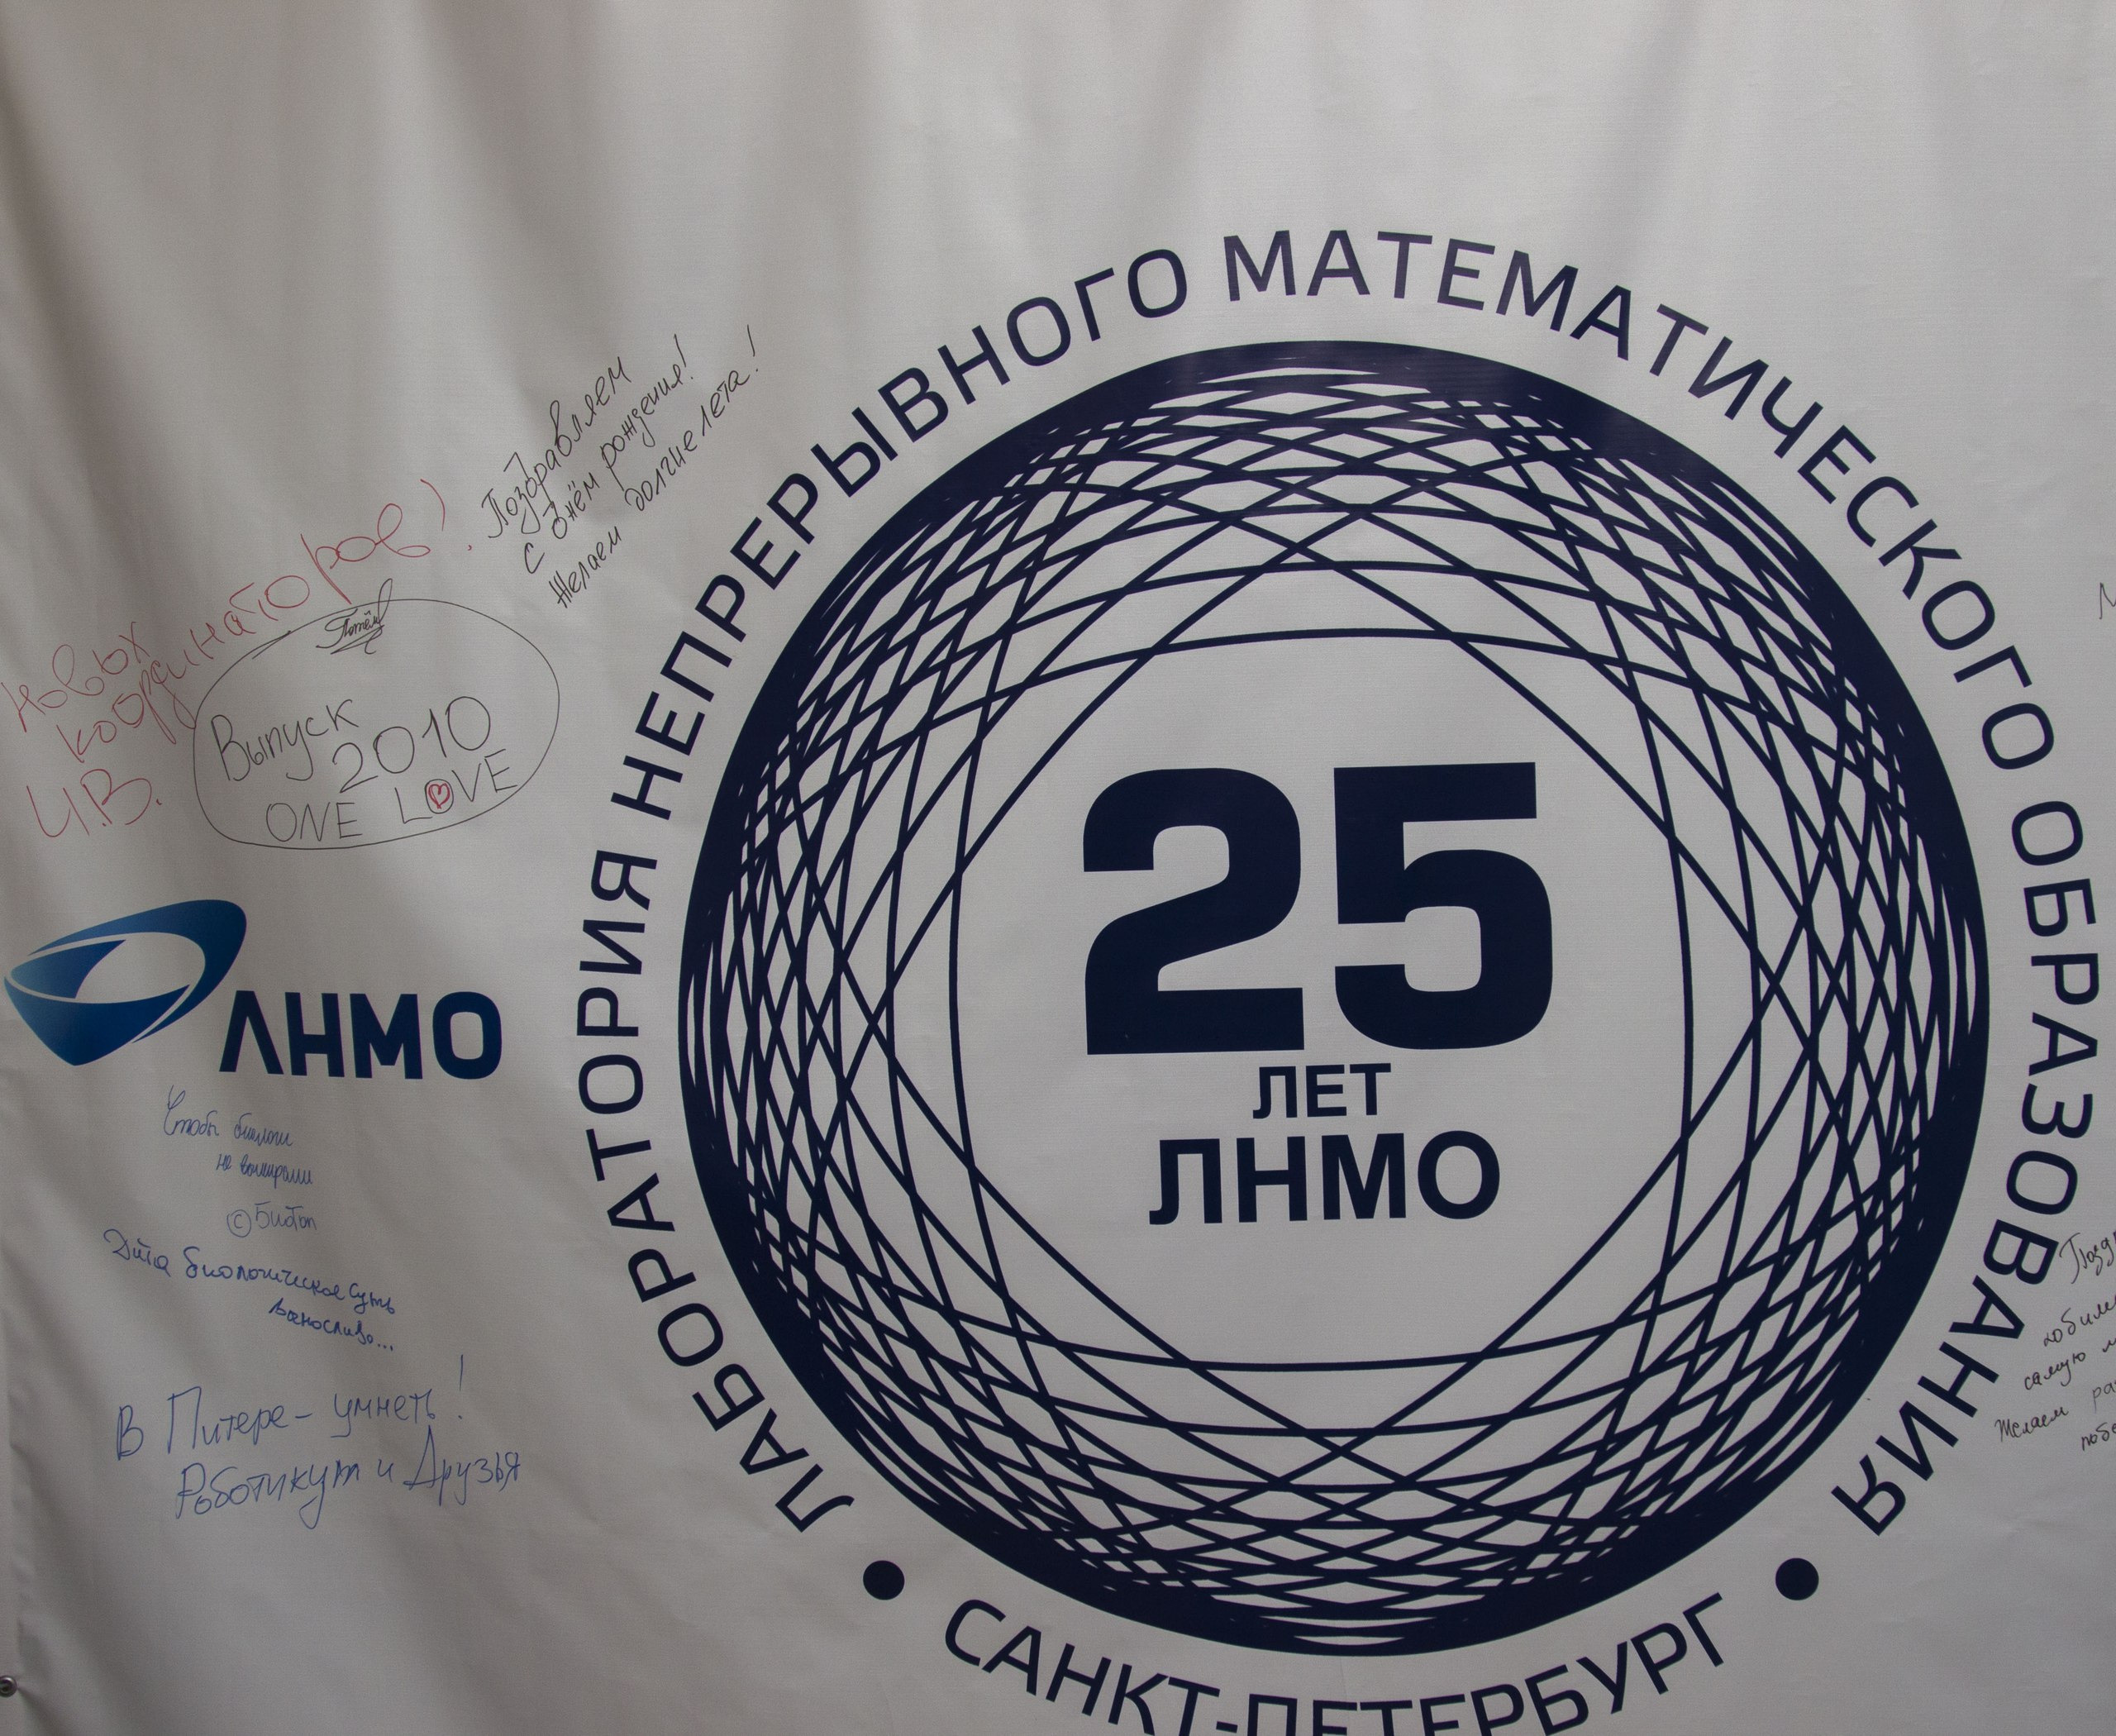 Лаборатория непрерывного математического образования. Флаг ЛНМО.